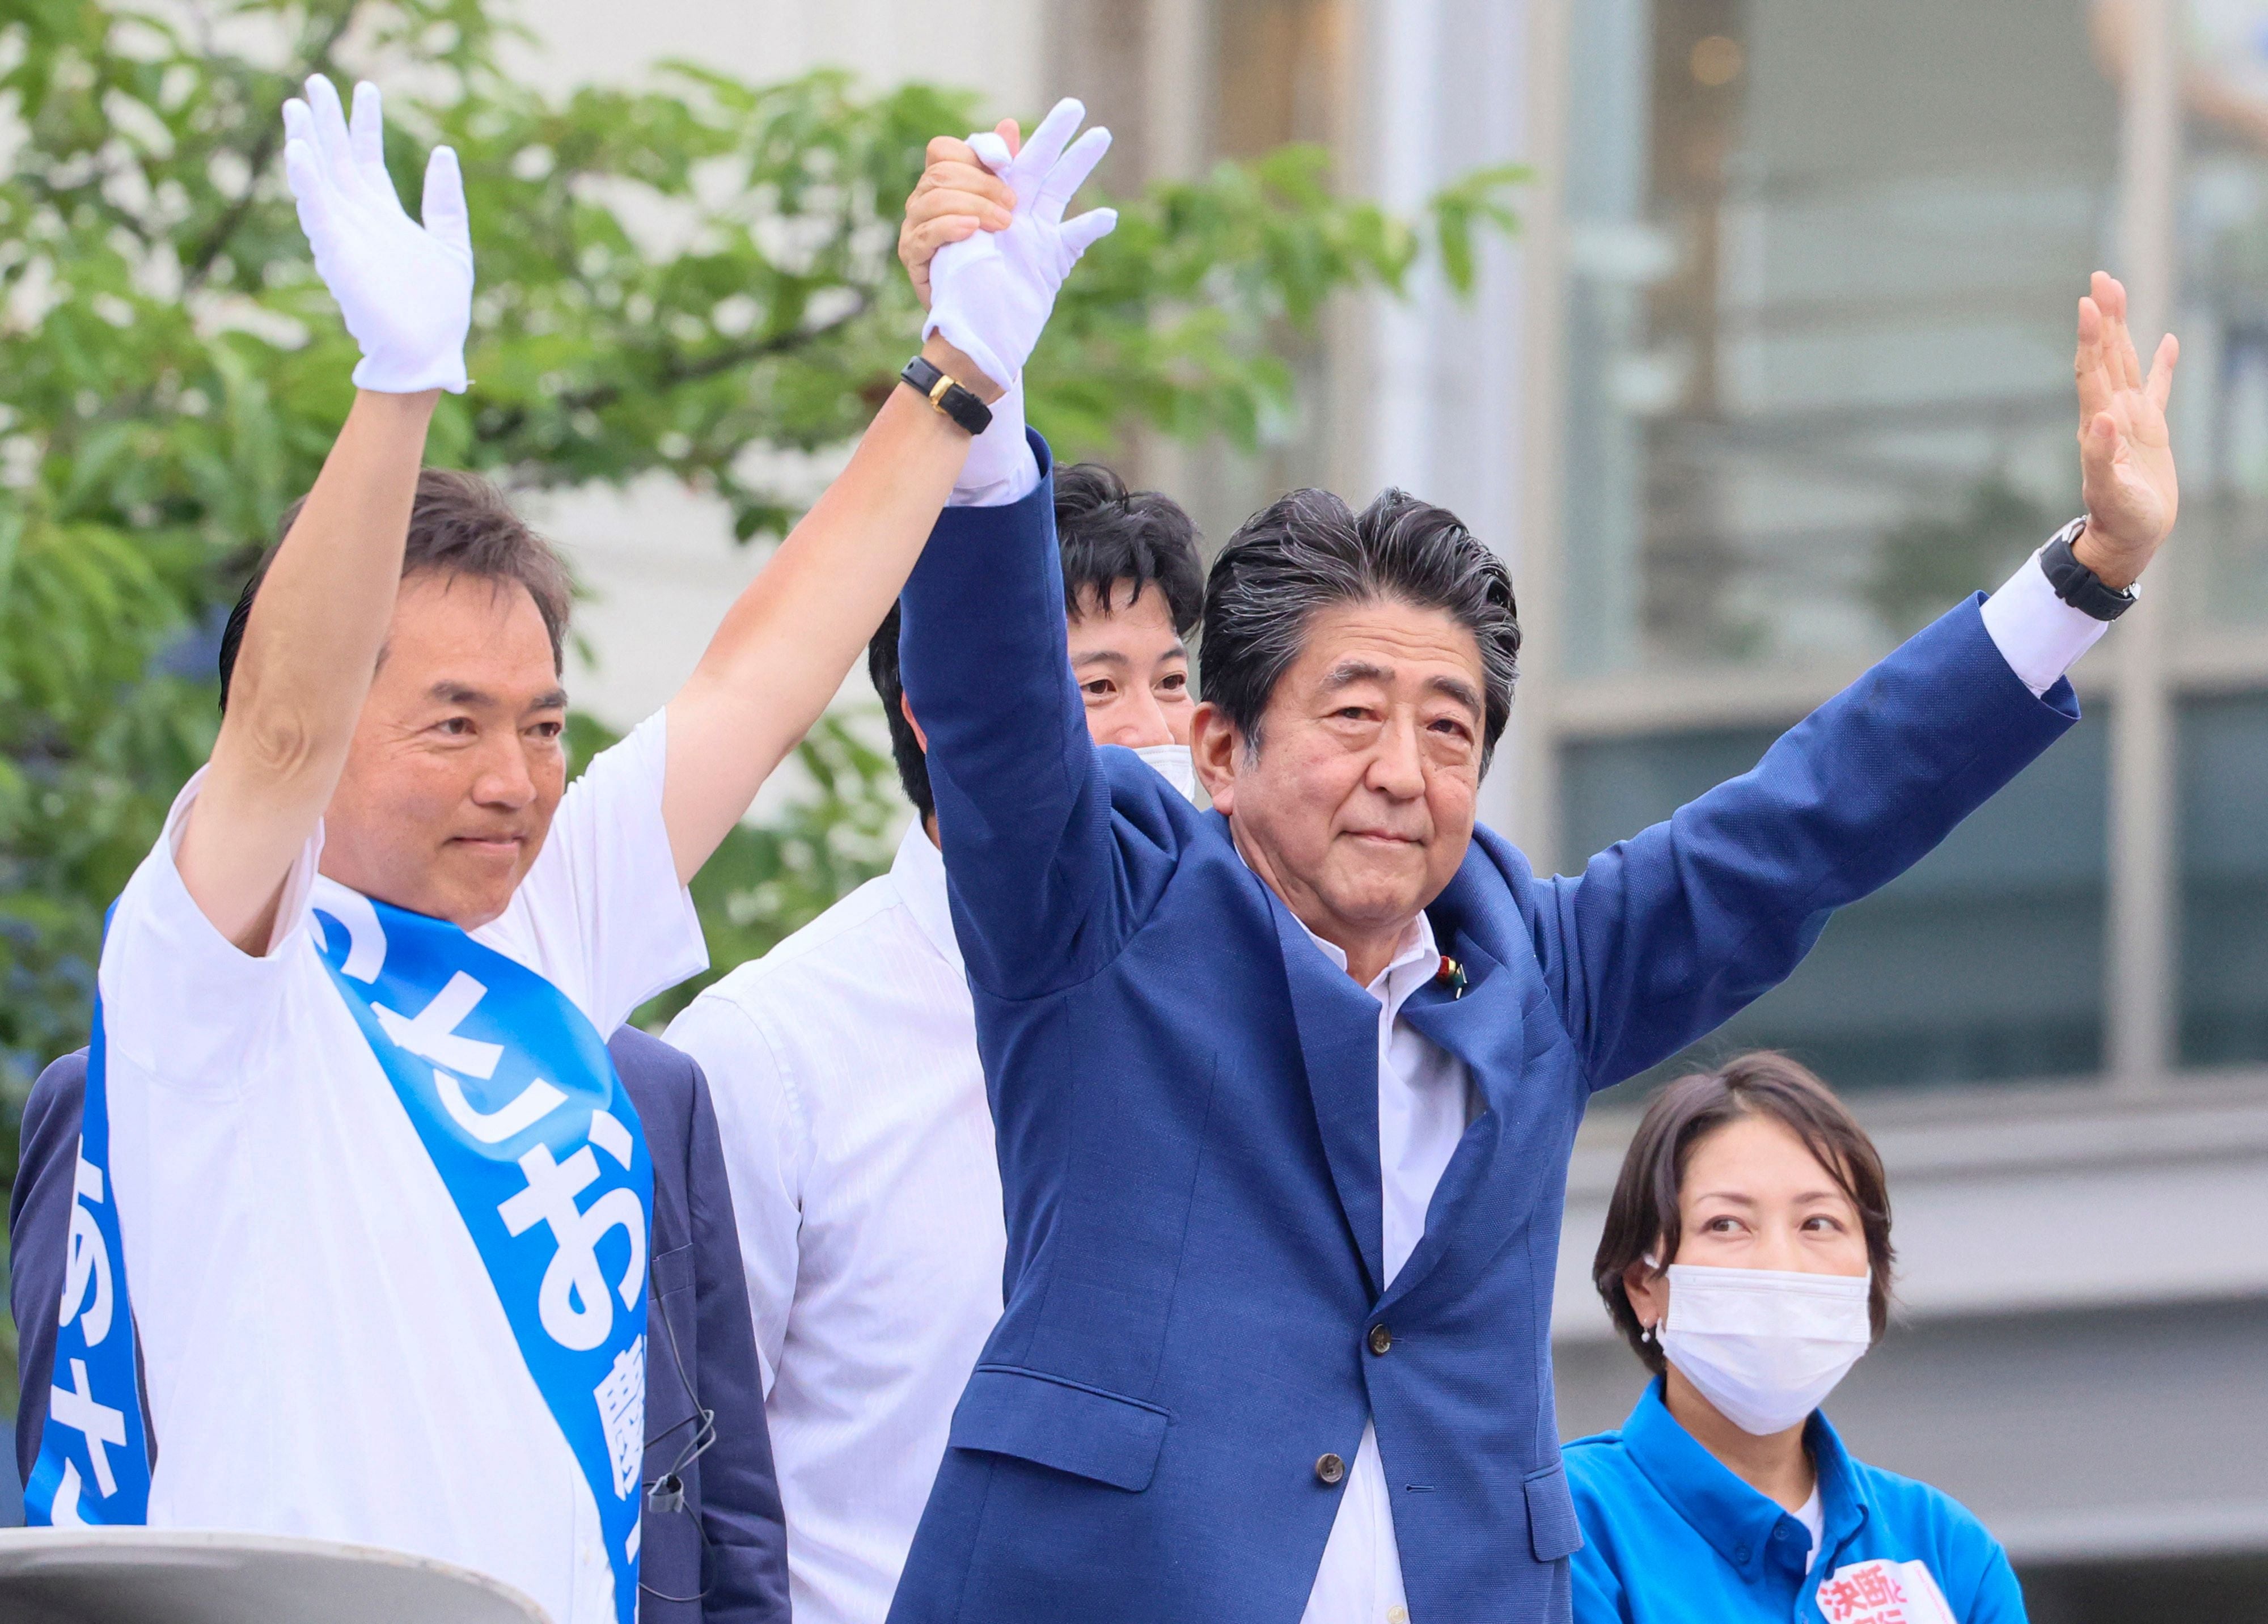 El exprimer ministro japonés Shinzo Abe animando en un acto el miércoles con el candidato del Partido Liberal Democrático Keiichiro Asao